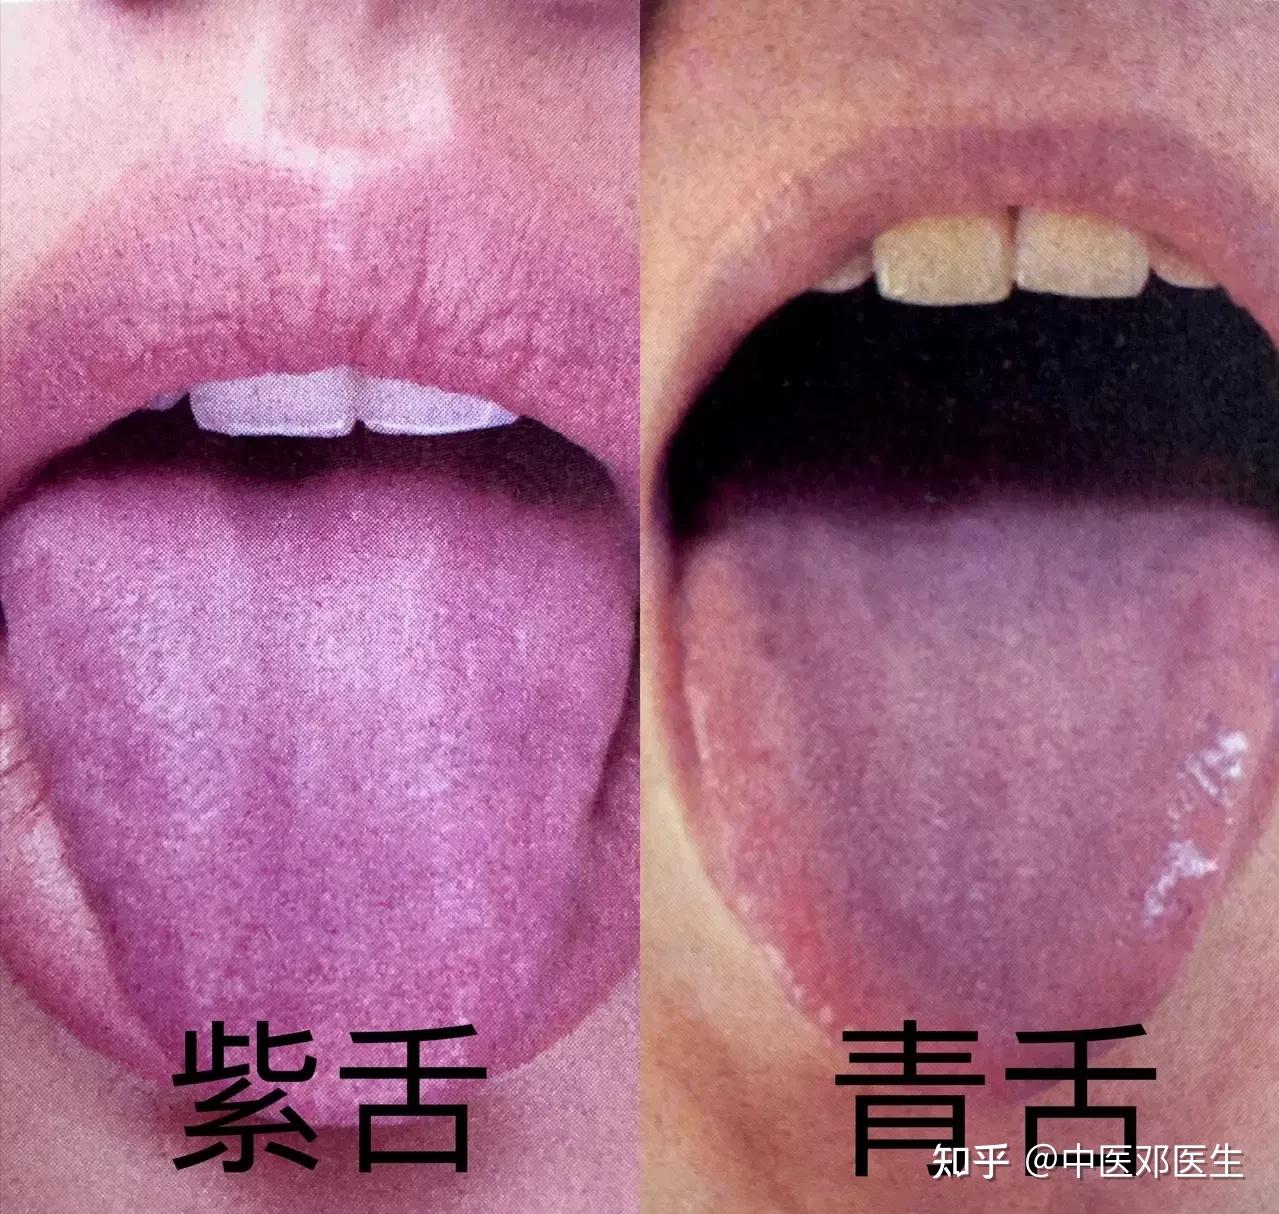 观舌头，知健康！舌色、舌形、舌苔反映身体隐疾，7种变化要知晓_问题